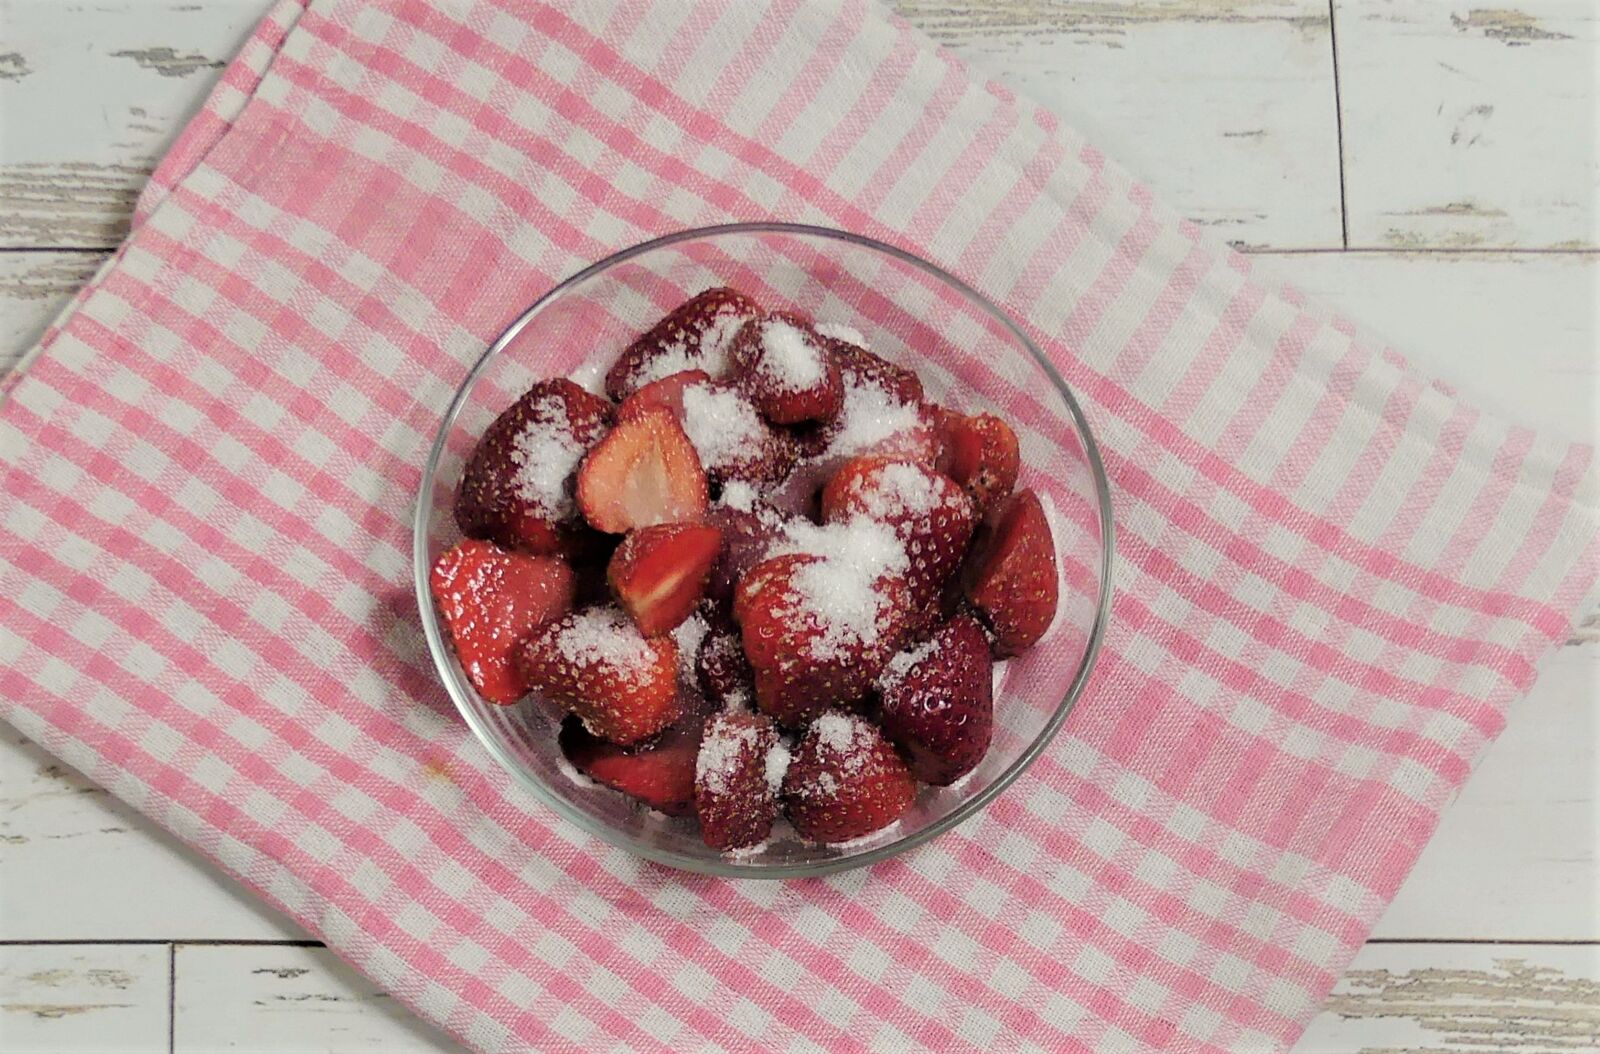 Panasonic Lumix DMC-FZ300 sample photo. Strawberries, sugared, fresh photography